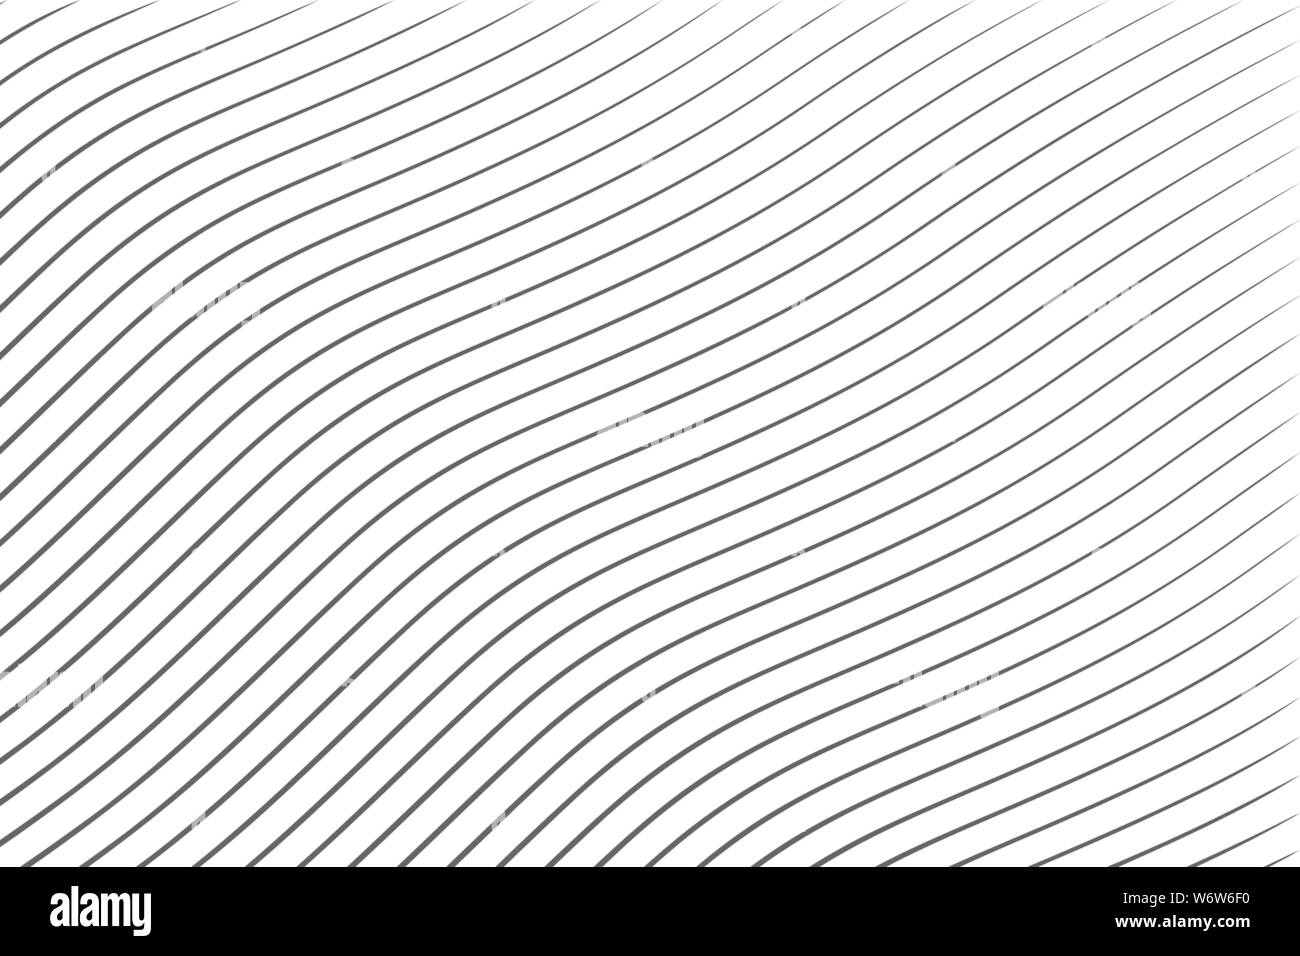 Résumé diagonale noire sur fond blanc vector illustration Illustration de Vecteur